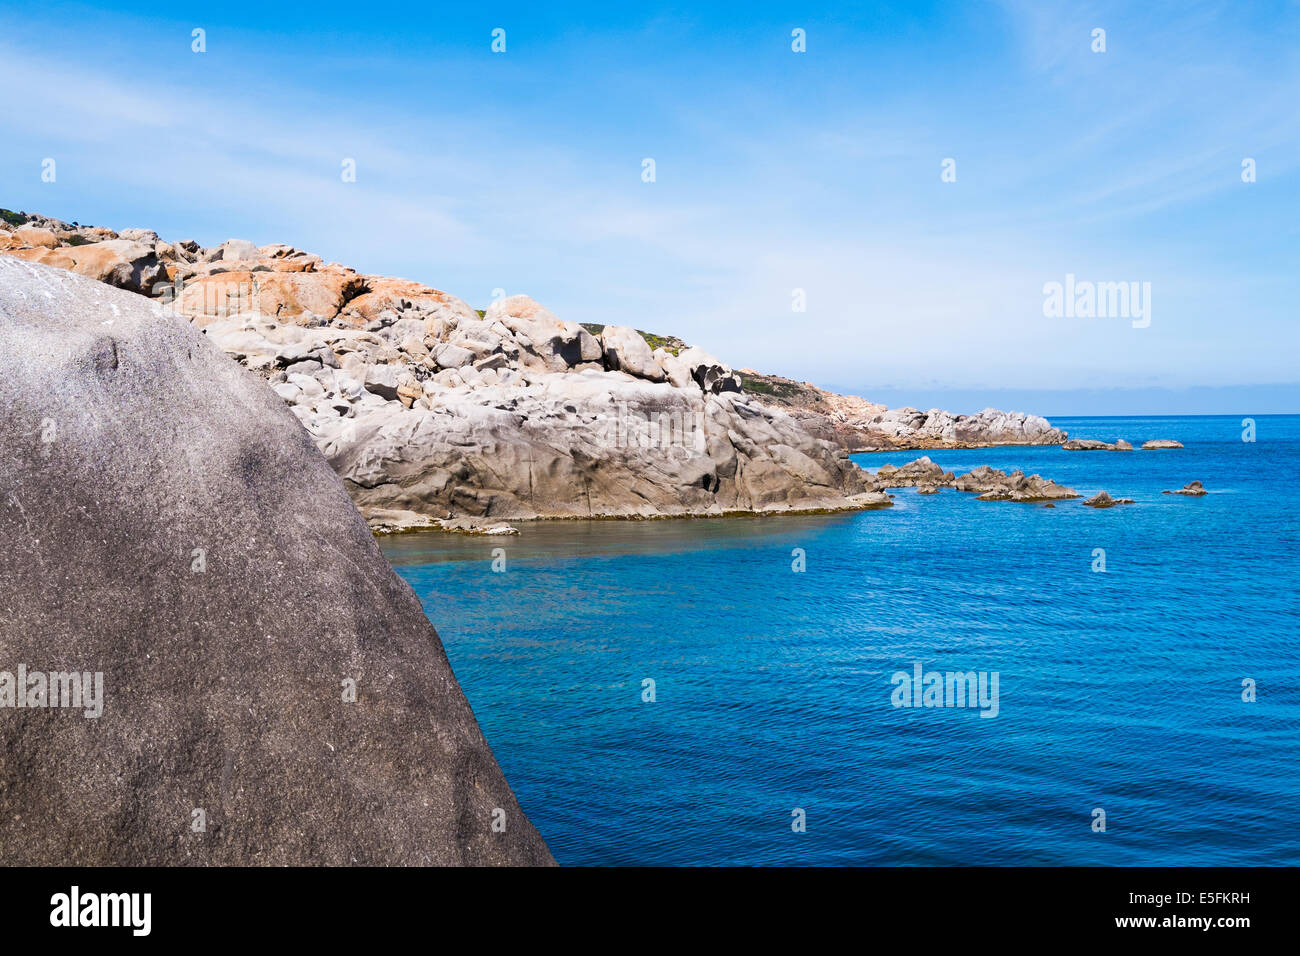 Mare blu nell' isola dell'Asinara in Sardegna, Italia Foto Stock